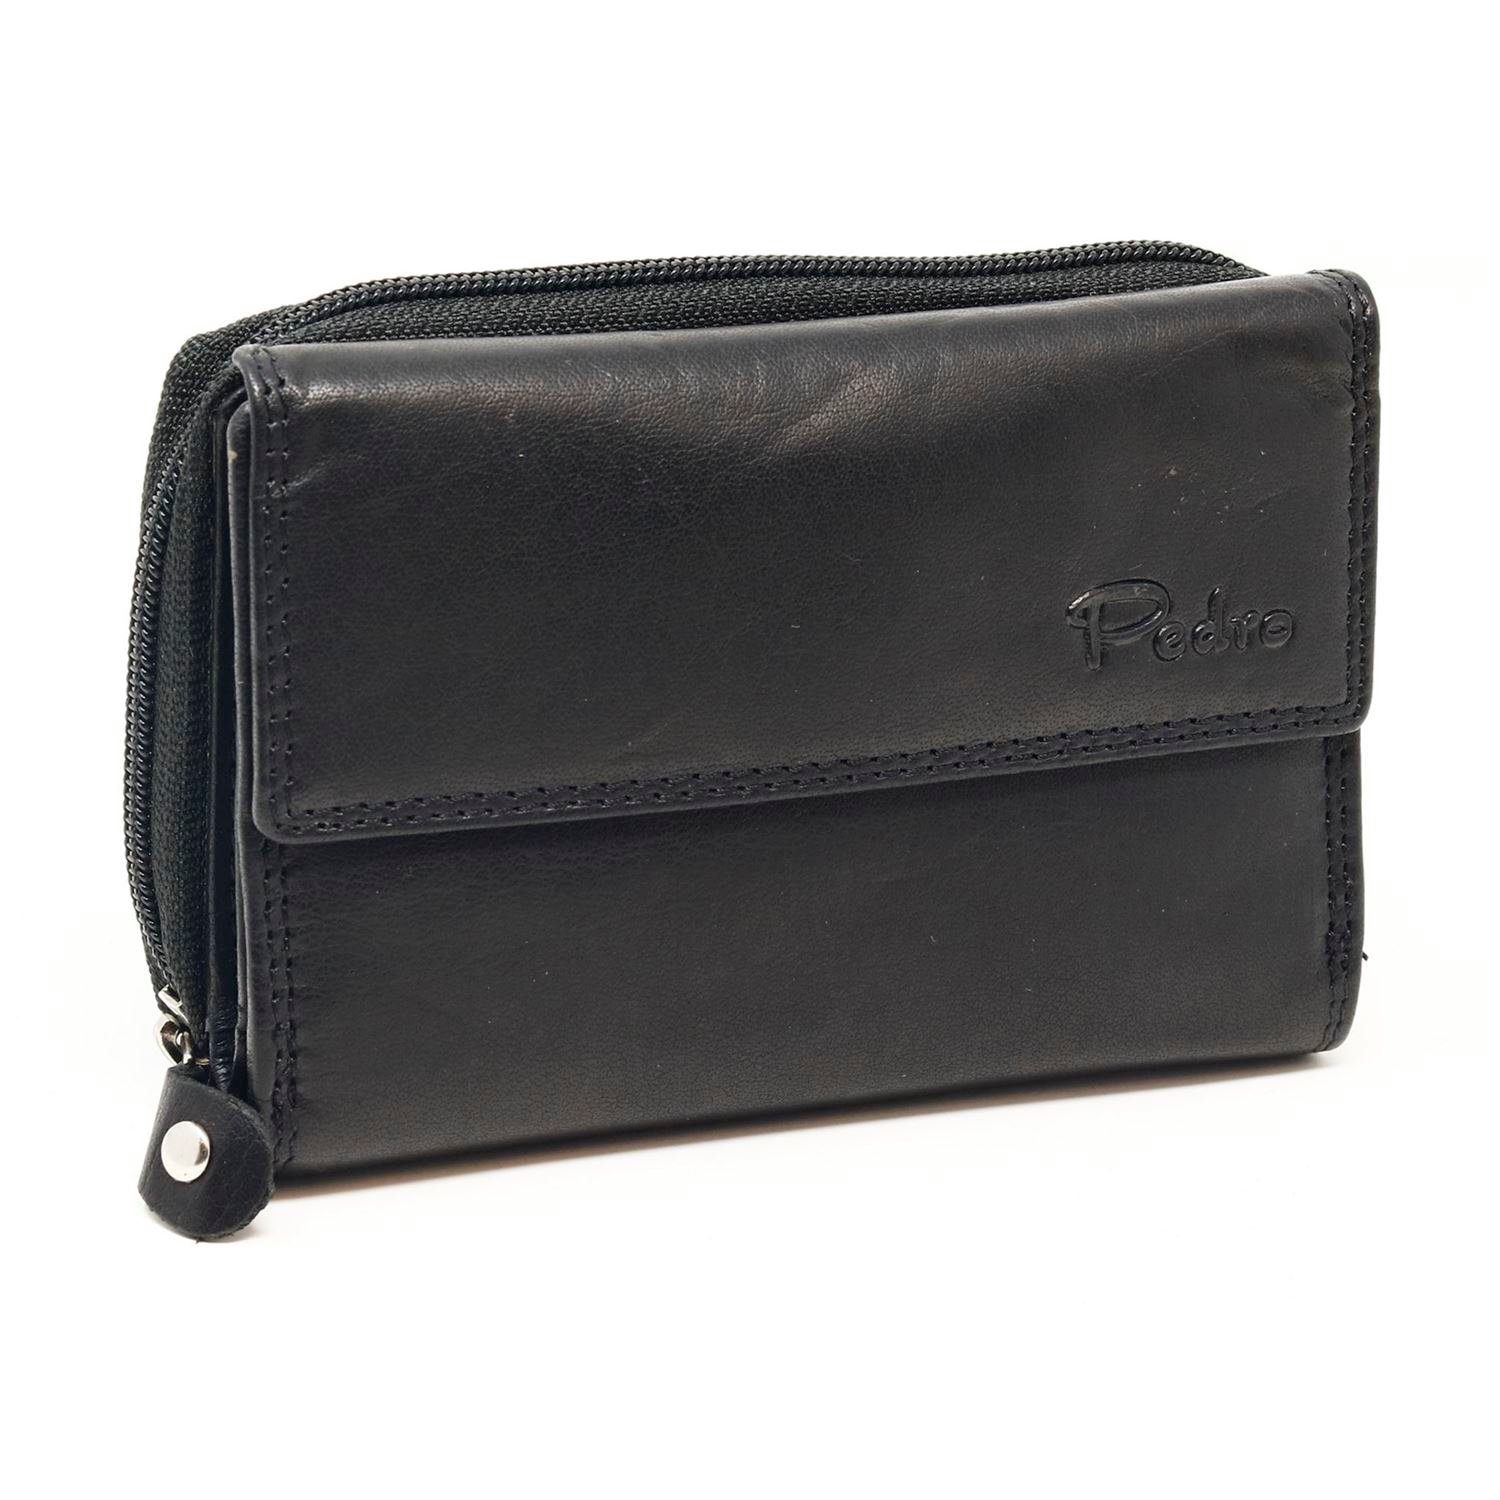 SHG Geldbörse Damenbörse Leder Portemonnaie, mit großen Münzfach - RFID Schutz - schwarz